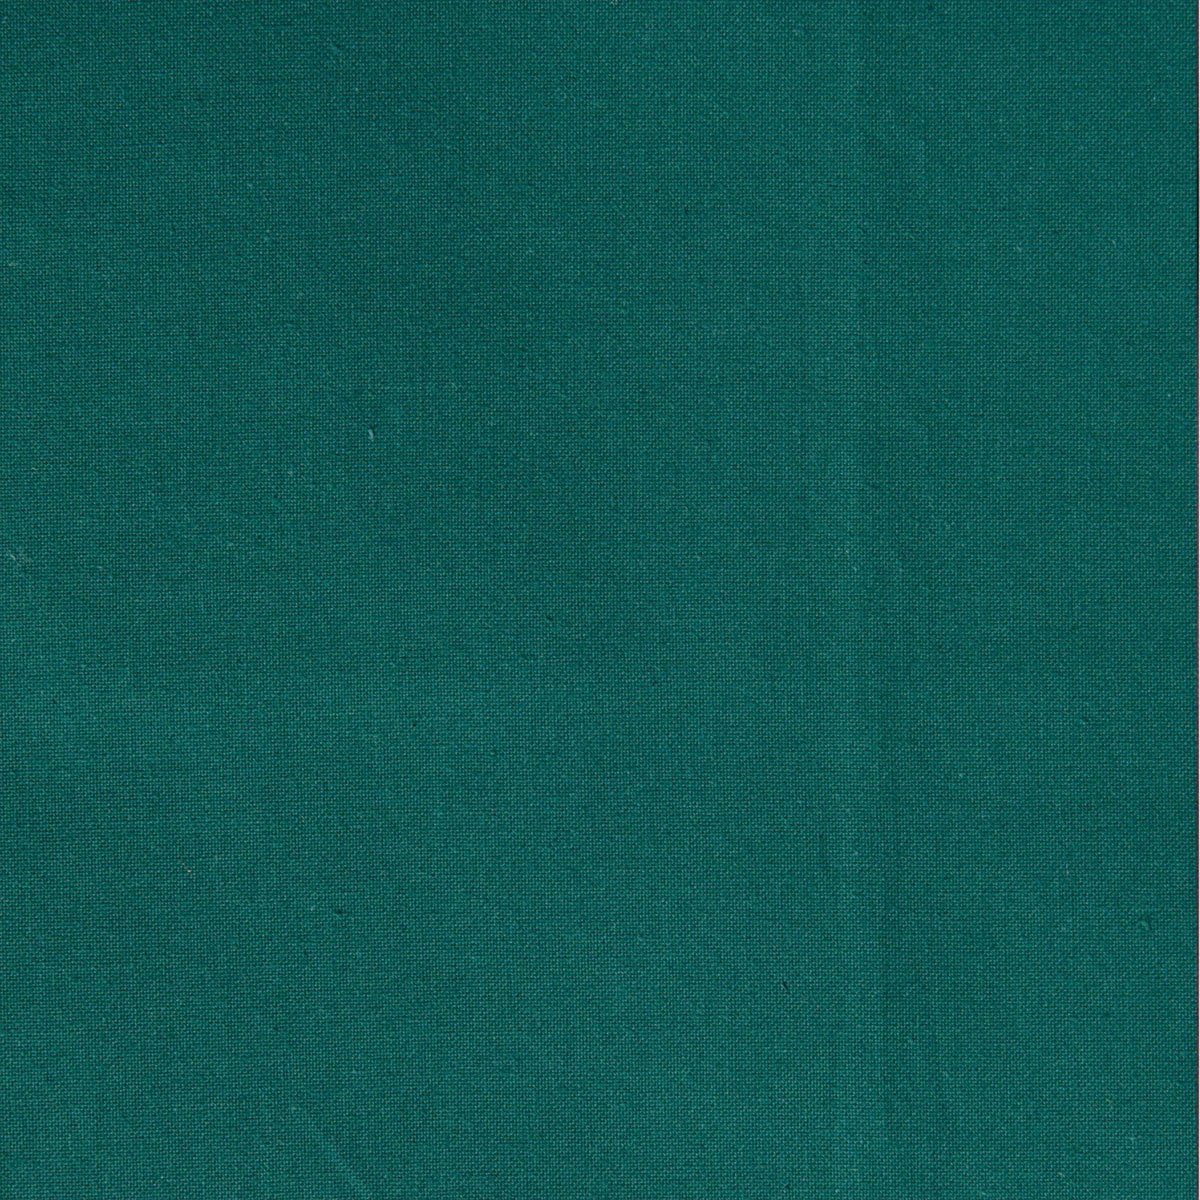 Dekostoff Freiberg tannengrün in 1,4m Breite (METERWARE) Baumwollstoff Stoff aus 100% Baumwolle